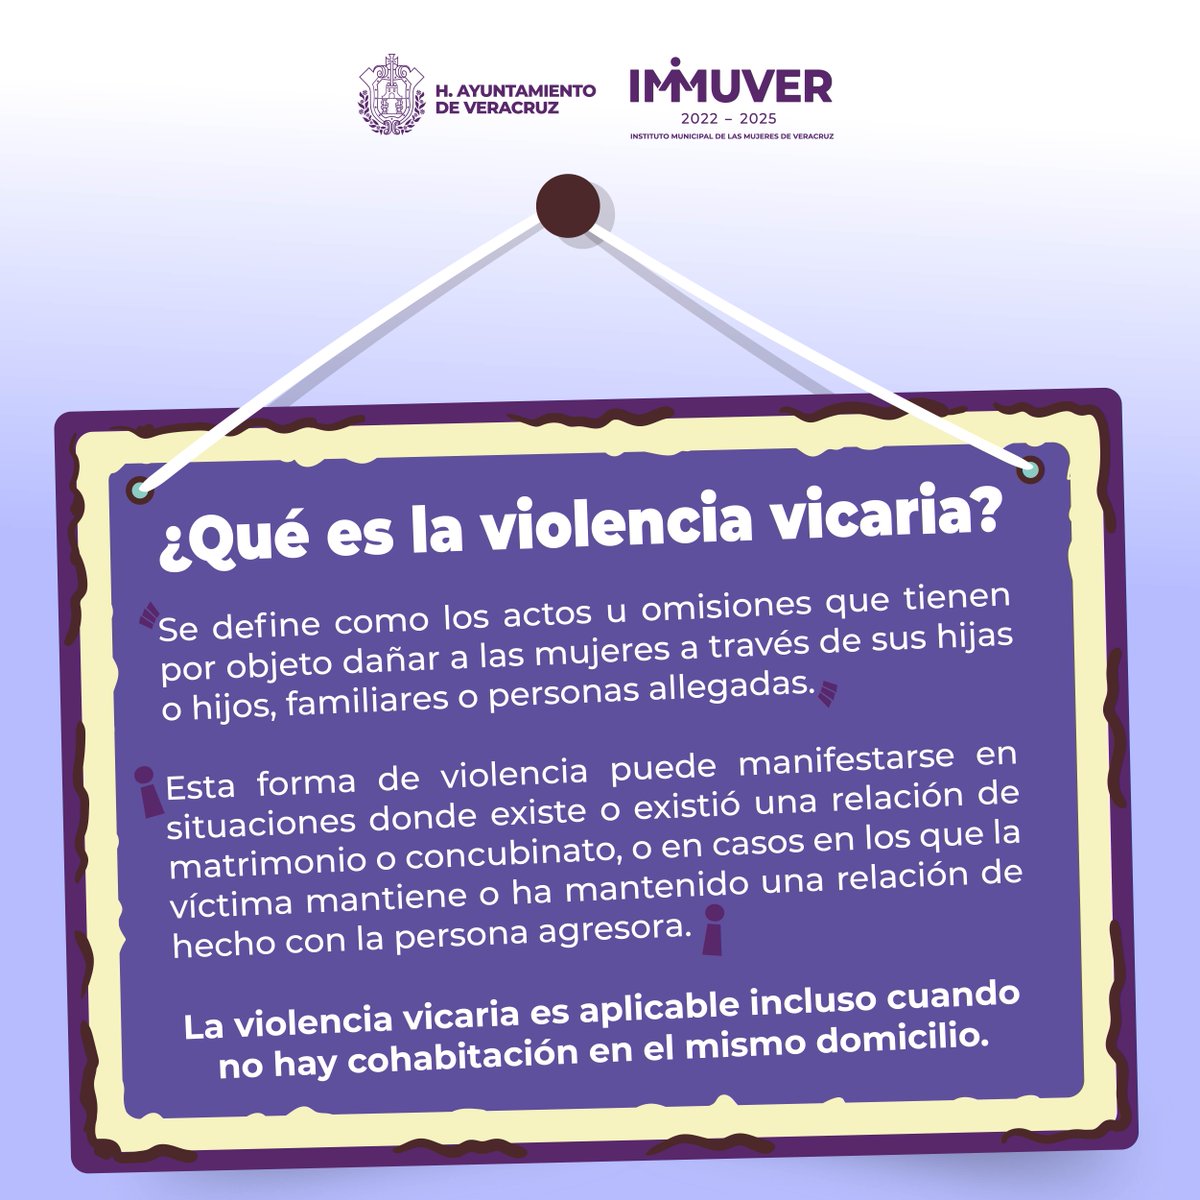 La violencia vicaria daña familias y lastima la integridad de mujeres, niños, niñas y adolecentes.